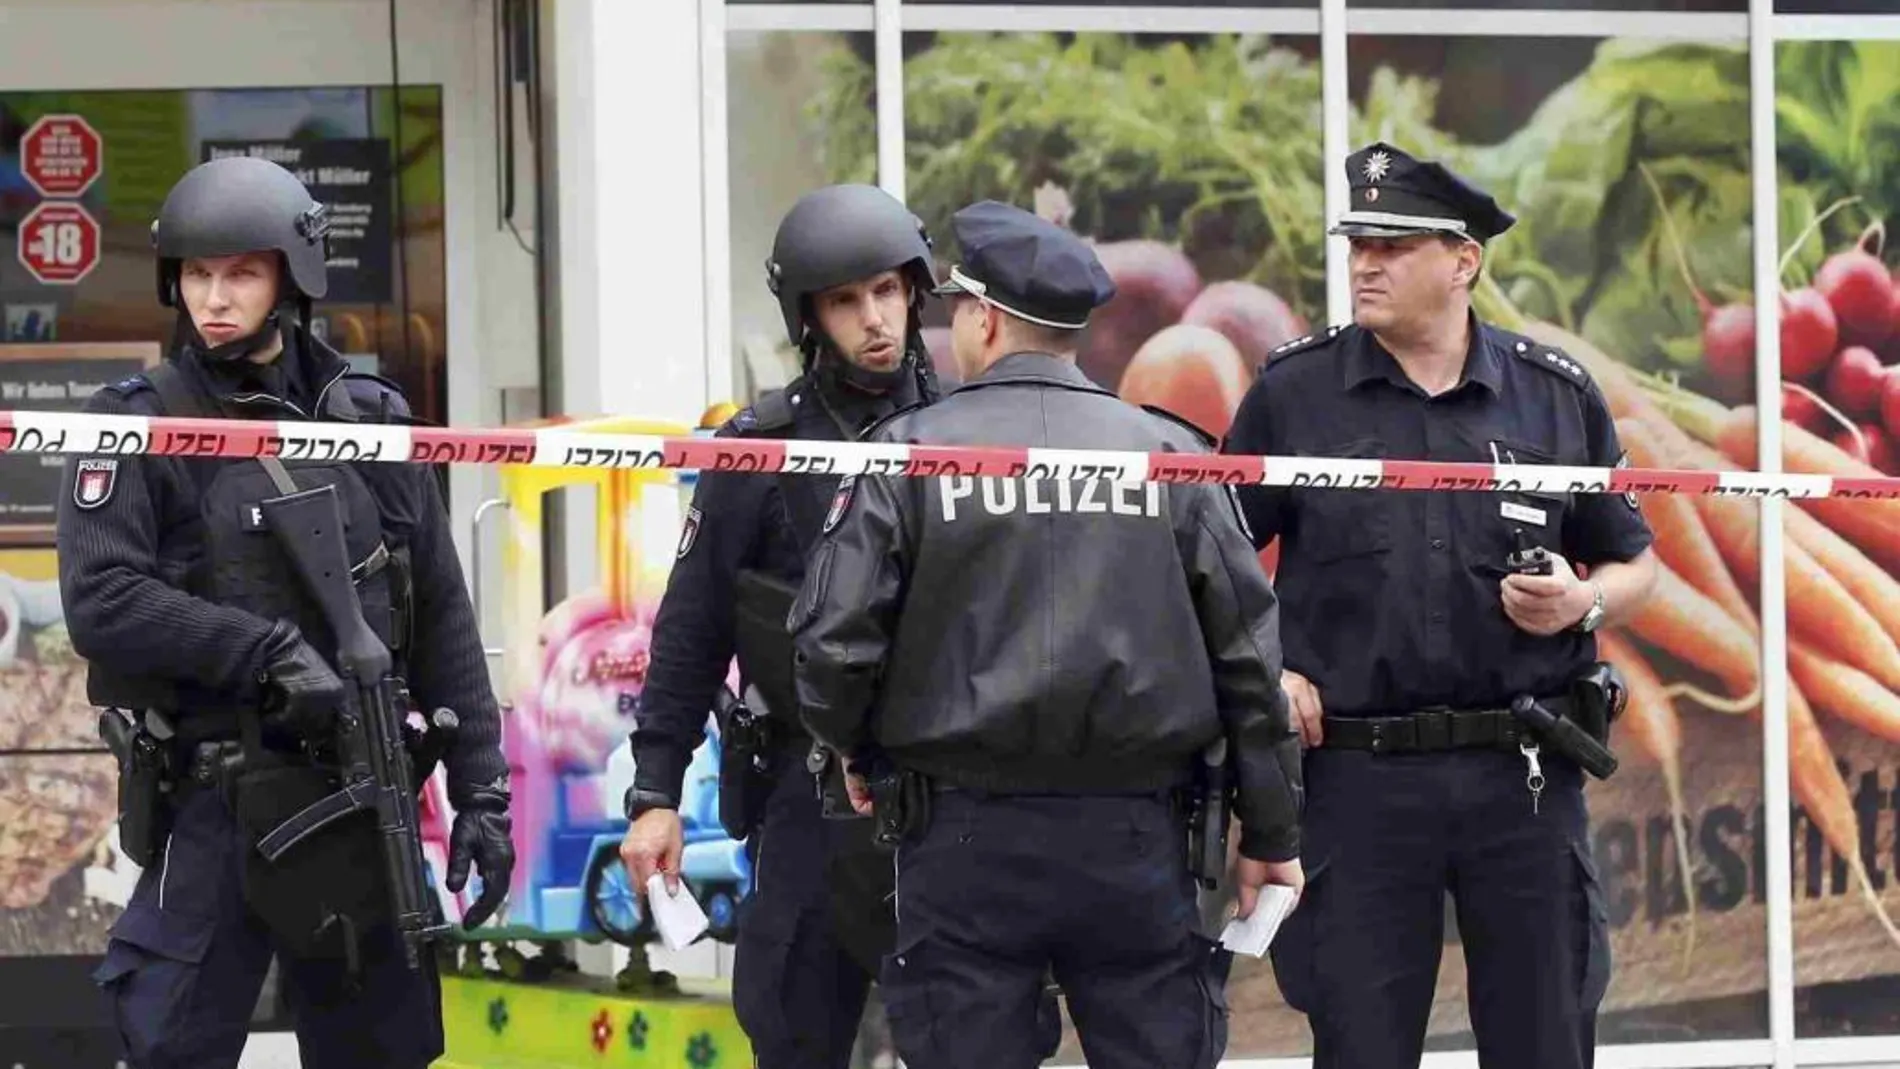 La policía monta guardia frente al supermercado en Hamburgo (Alemania) donde, según fuentes policiales, un hombre ha atacado a cuchilladas a varias personas.